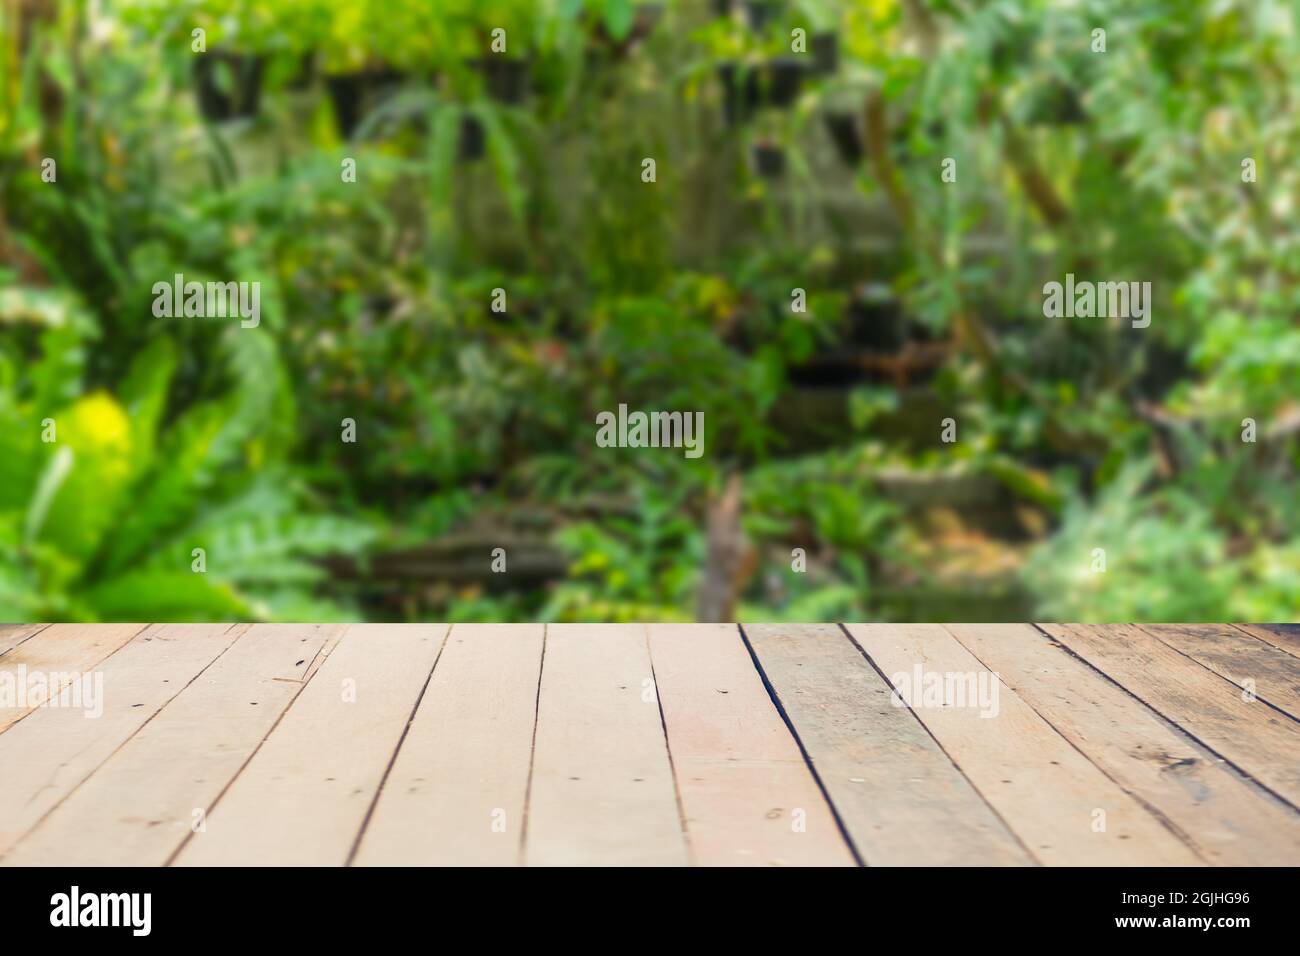 Holztisch Platz mit verschwommen grünen Natur Regenwald frisch für Eco-Produkte Werbung Montage Hintergrund. Stockfoto